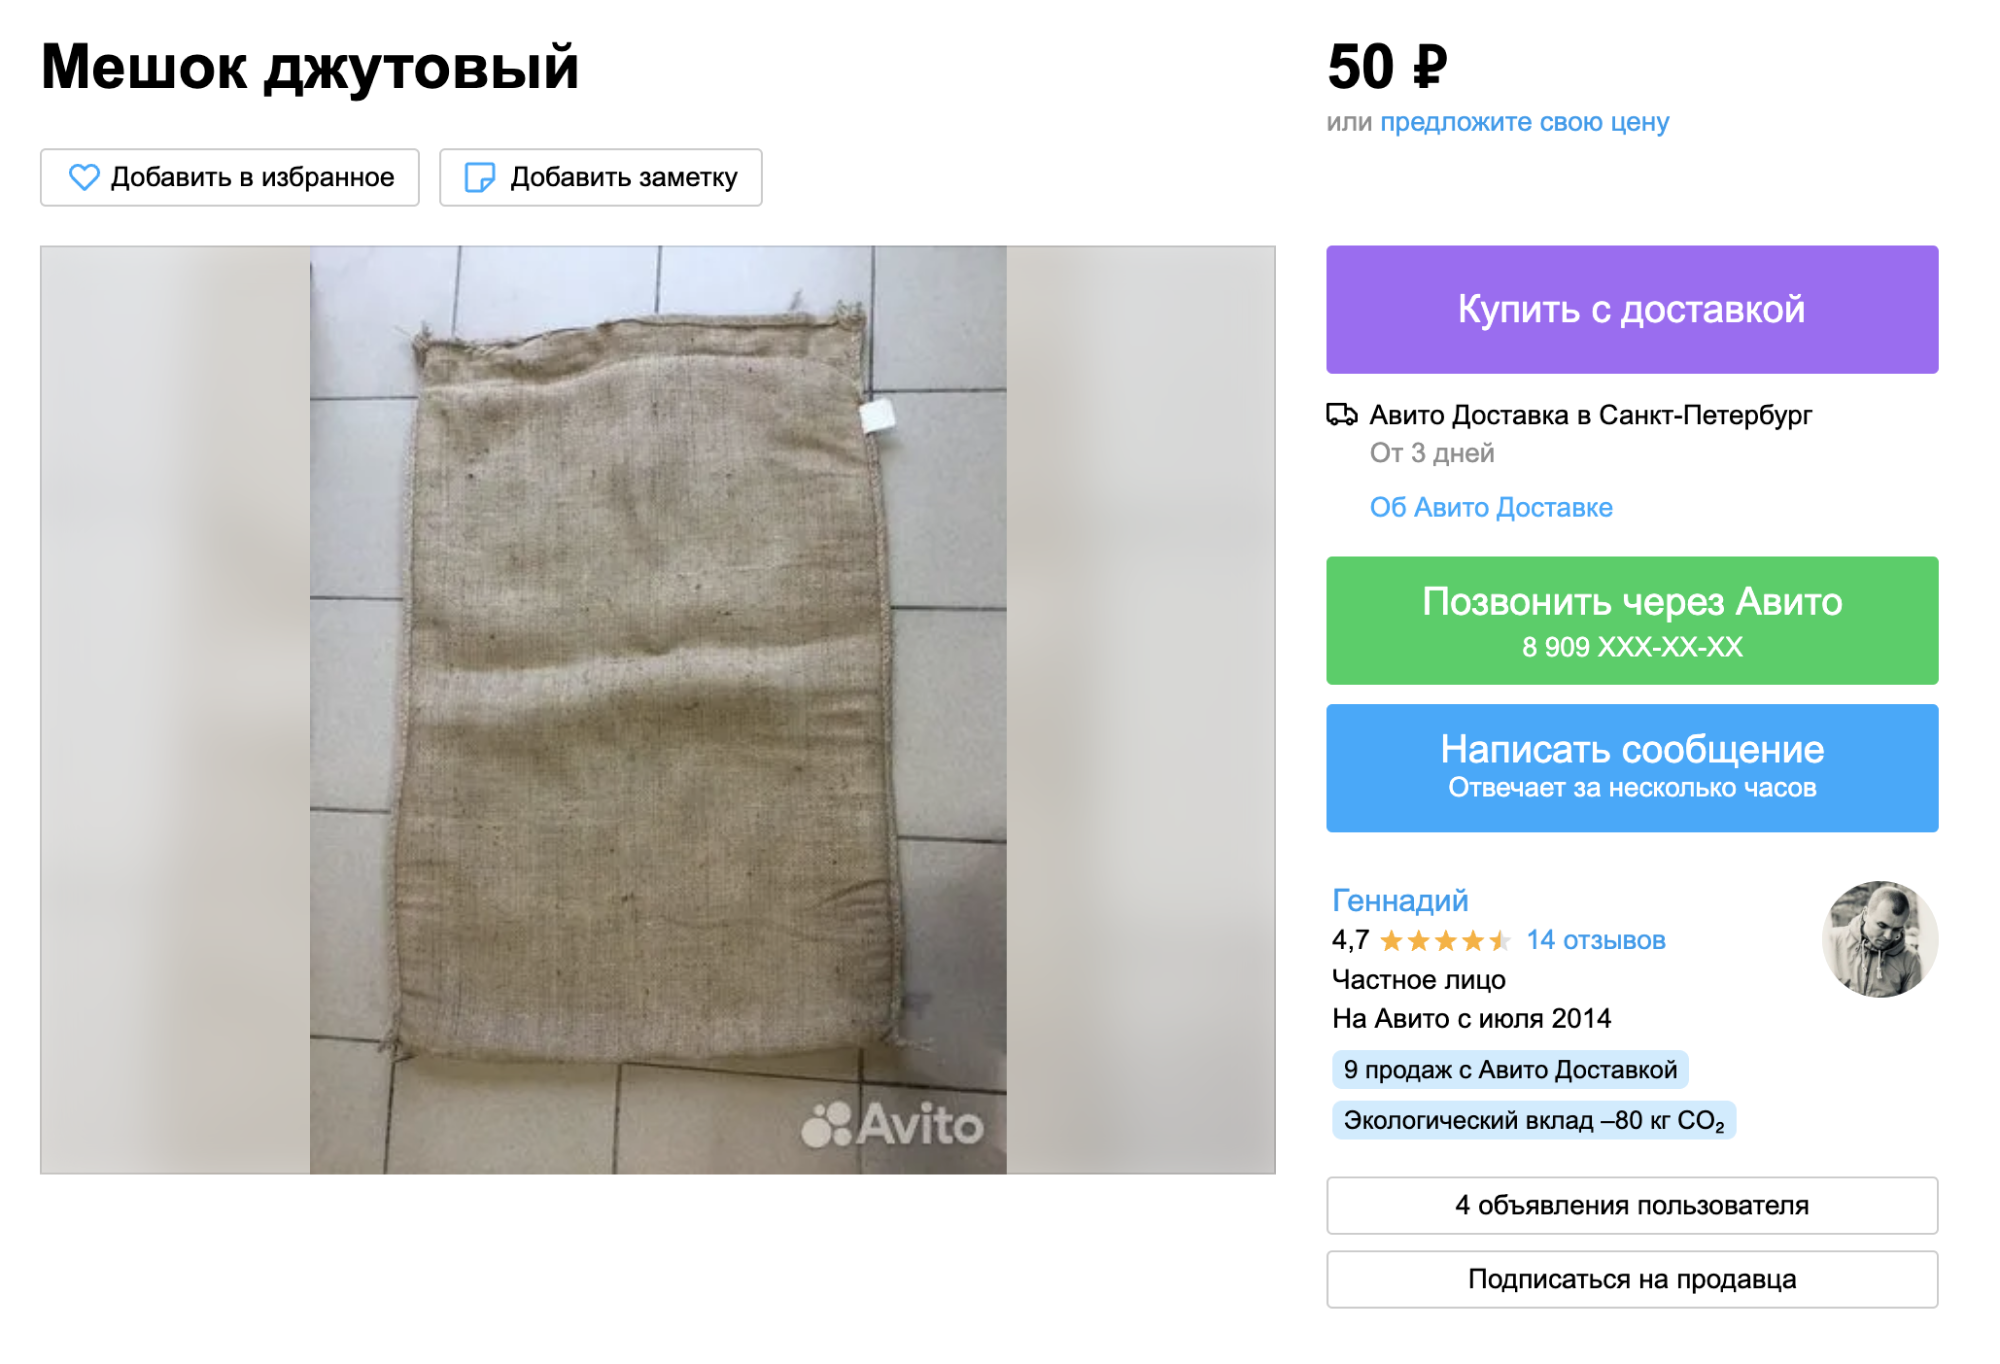 На «Авито» джутовый мешок обойдется в 50 ₽. Почти в каждом городе есть рынок, где такие мешки продаются дешевле мешковины на маркетплейсах. Источник: avito.ru